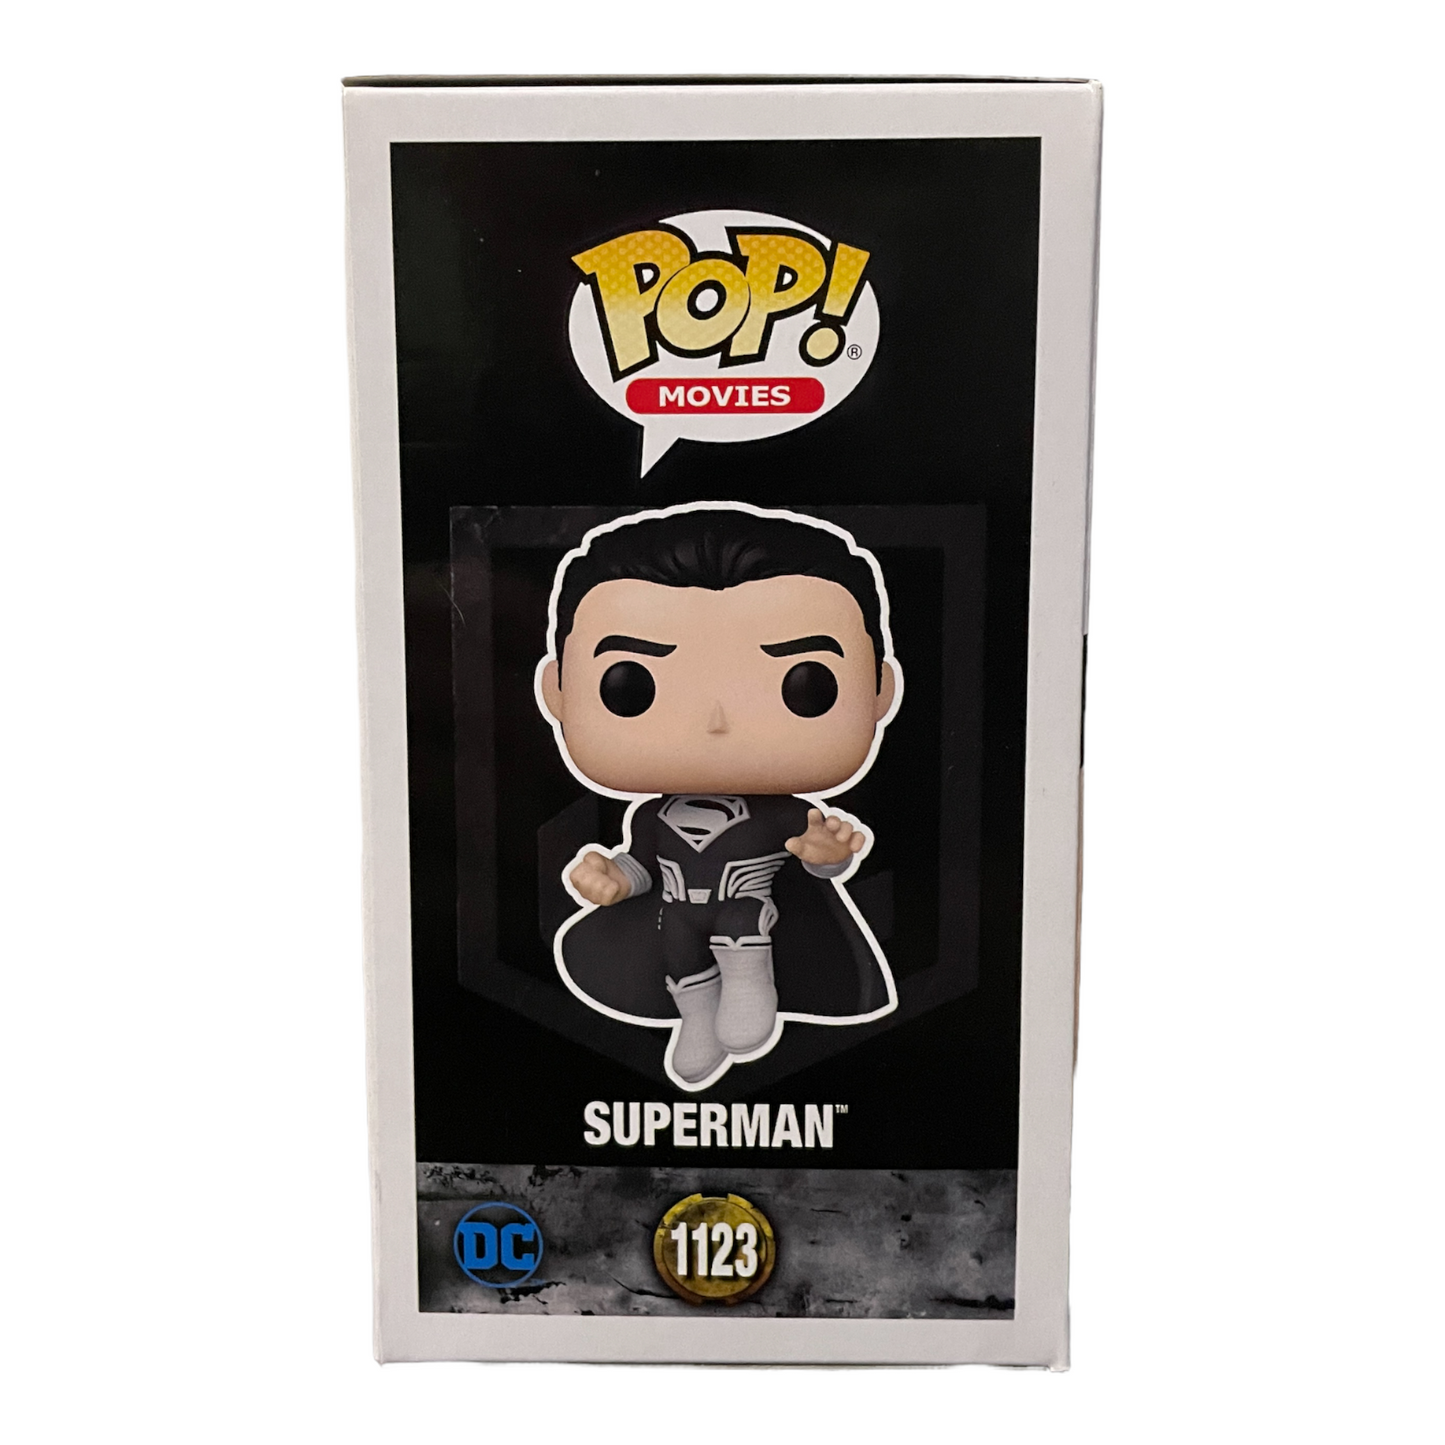 Superman #1123 (black suit)